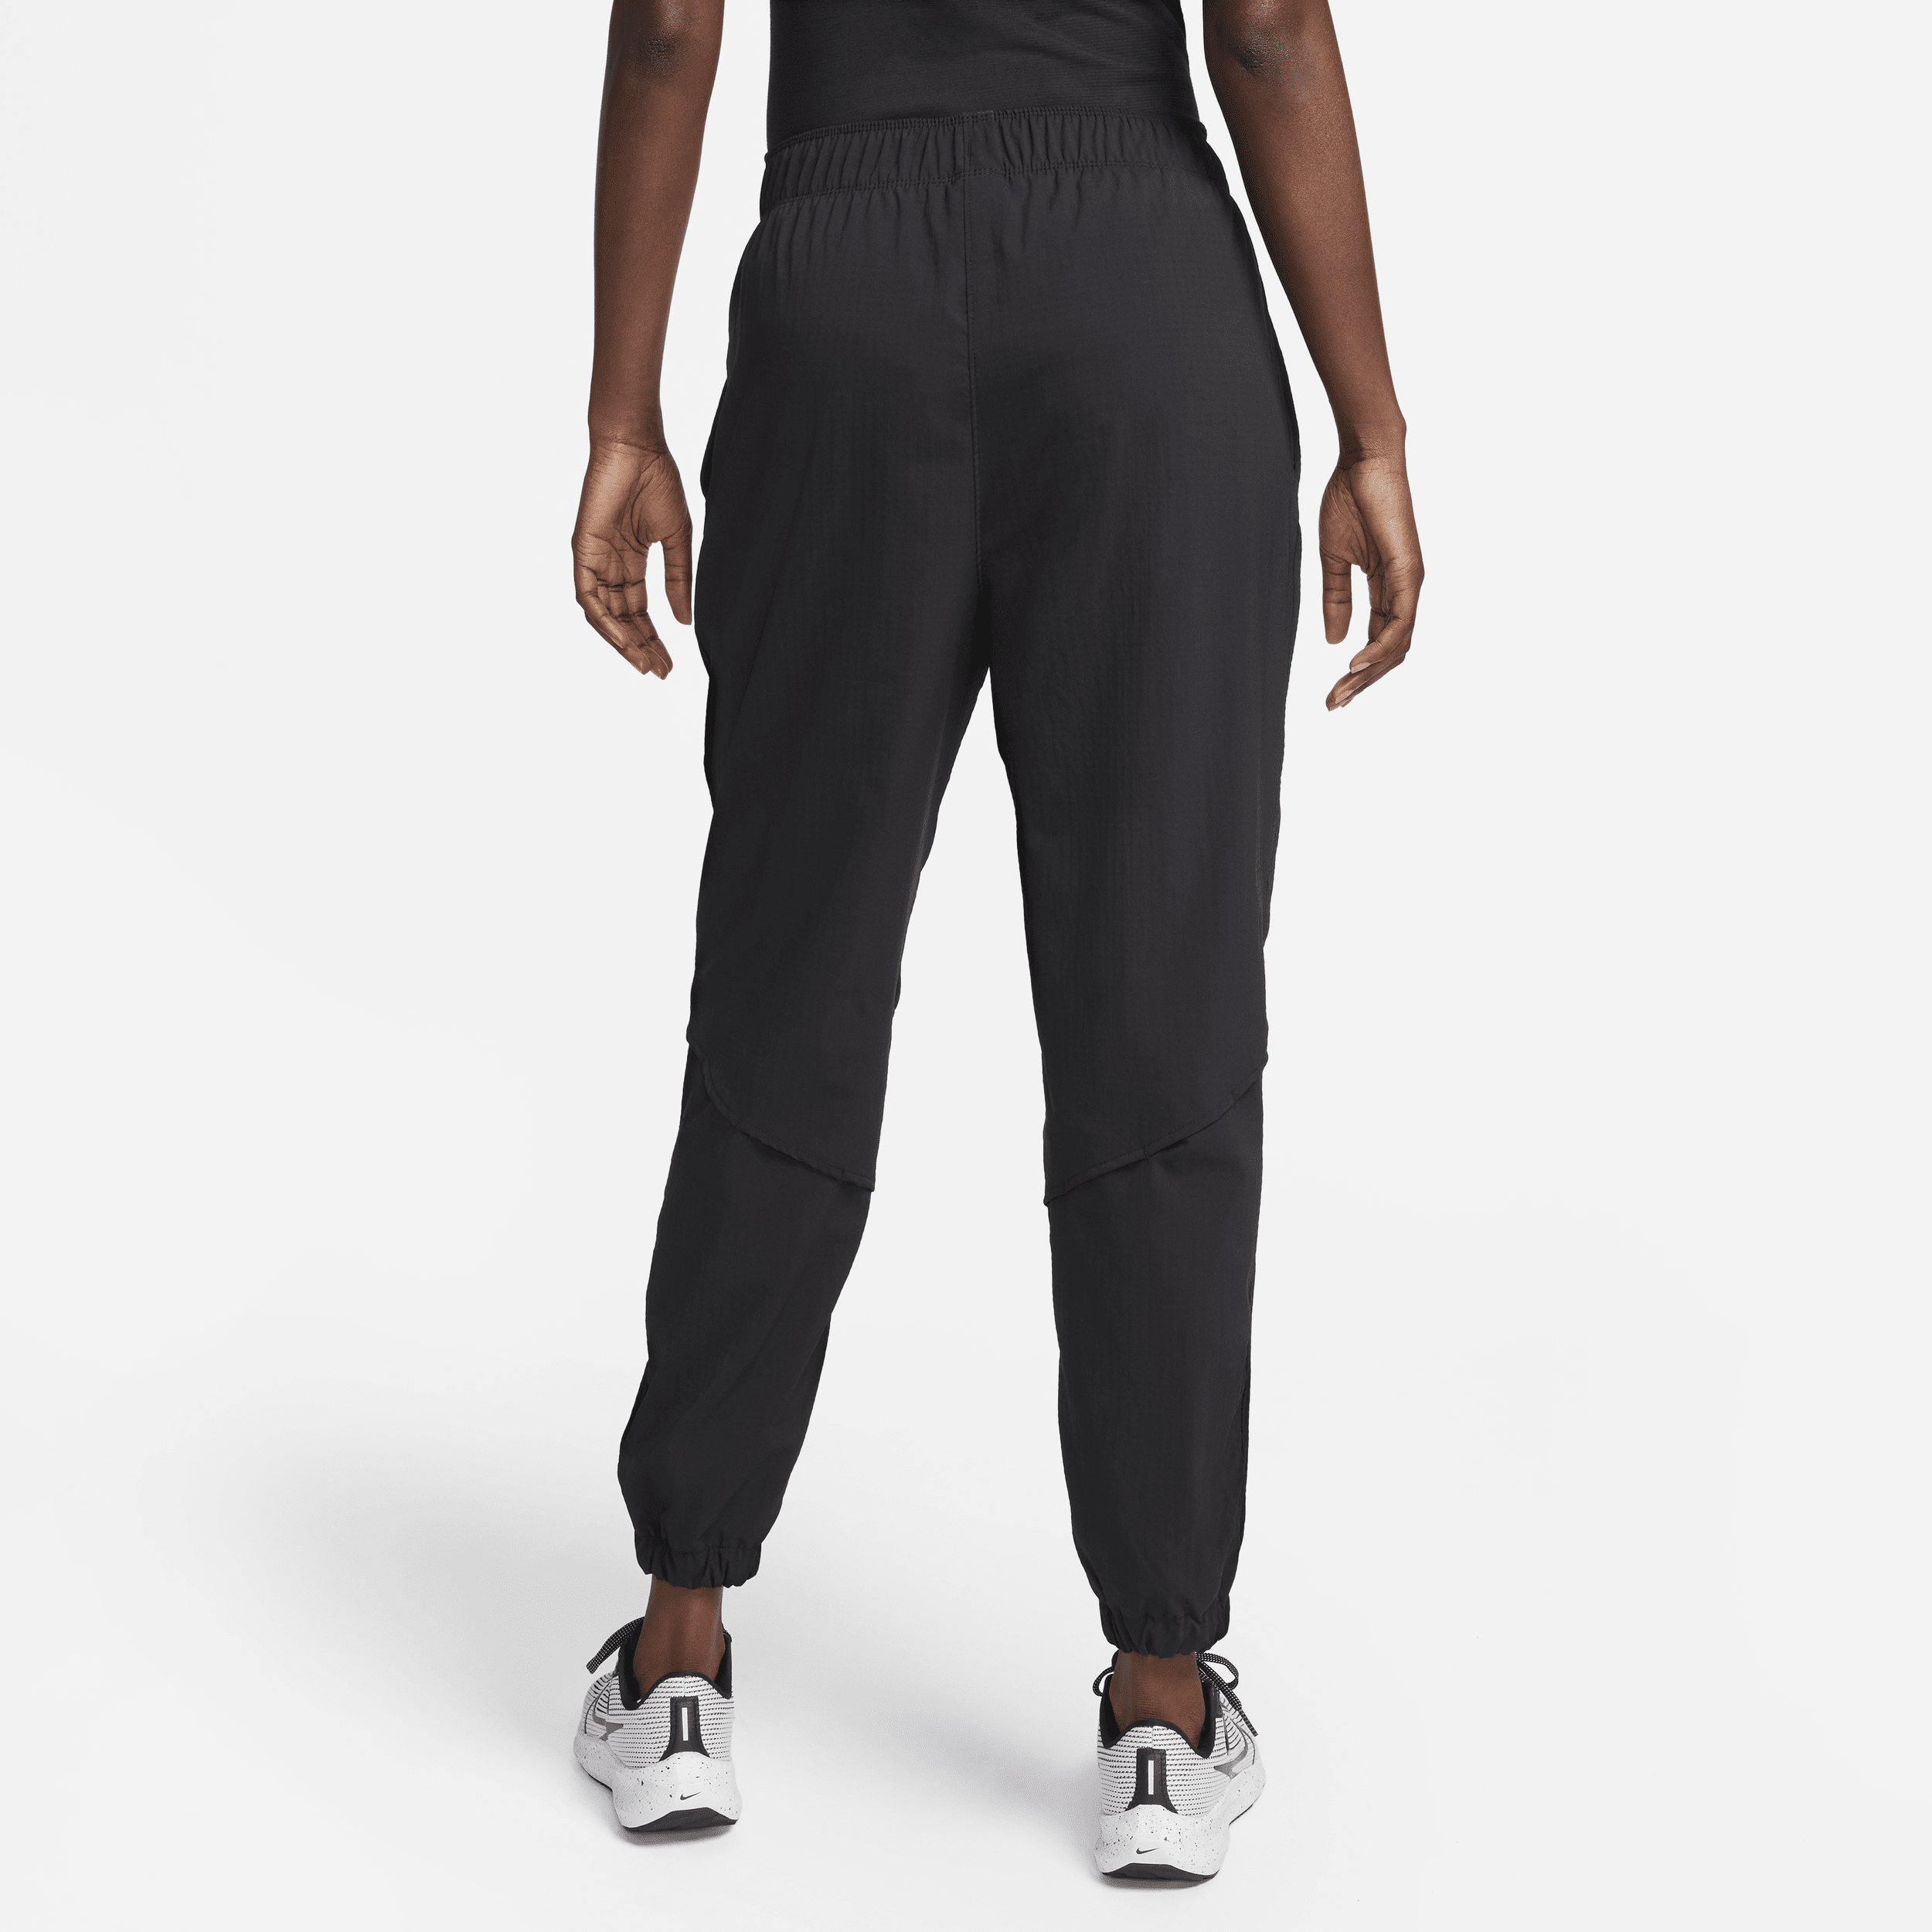 Nike Dri-FIT Fast 7 8-hardloopbroek met halfhoge taille voor warming-up voor dames Zwart